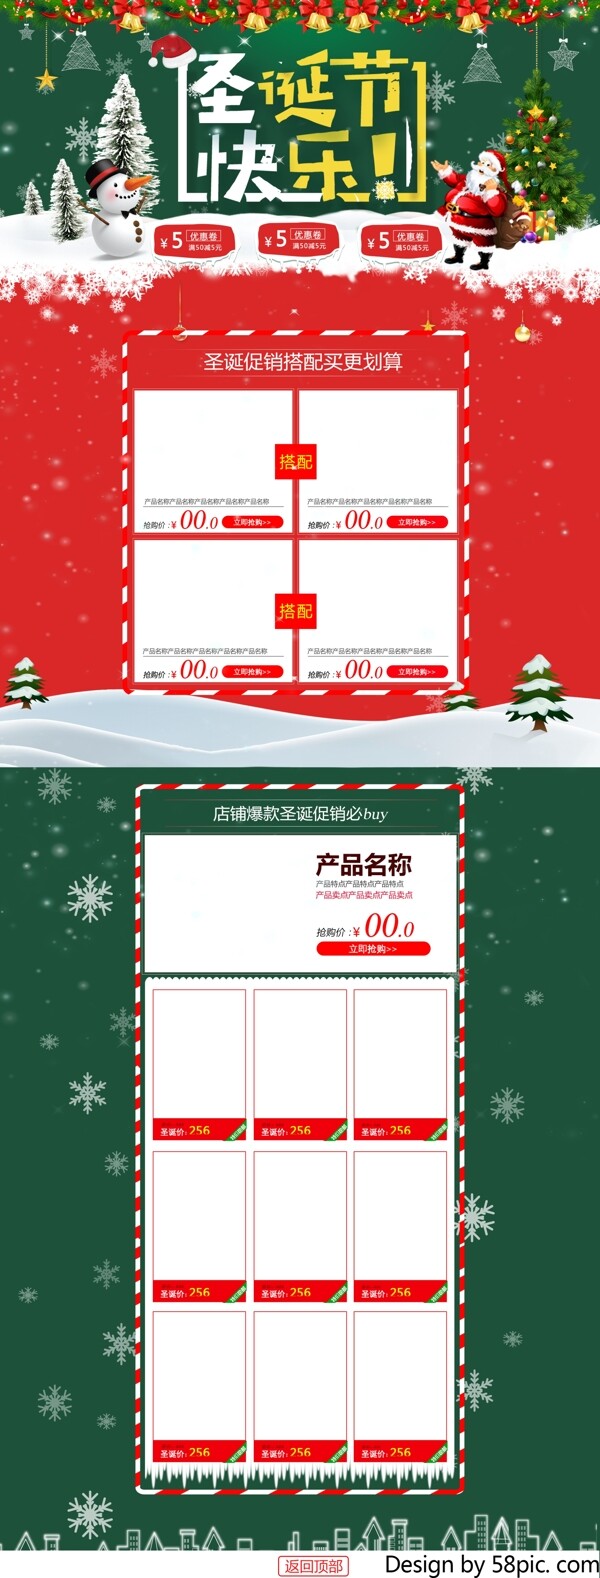 绿色小清新时尚天猫淘宝圣诞节首页促销模板